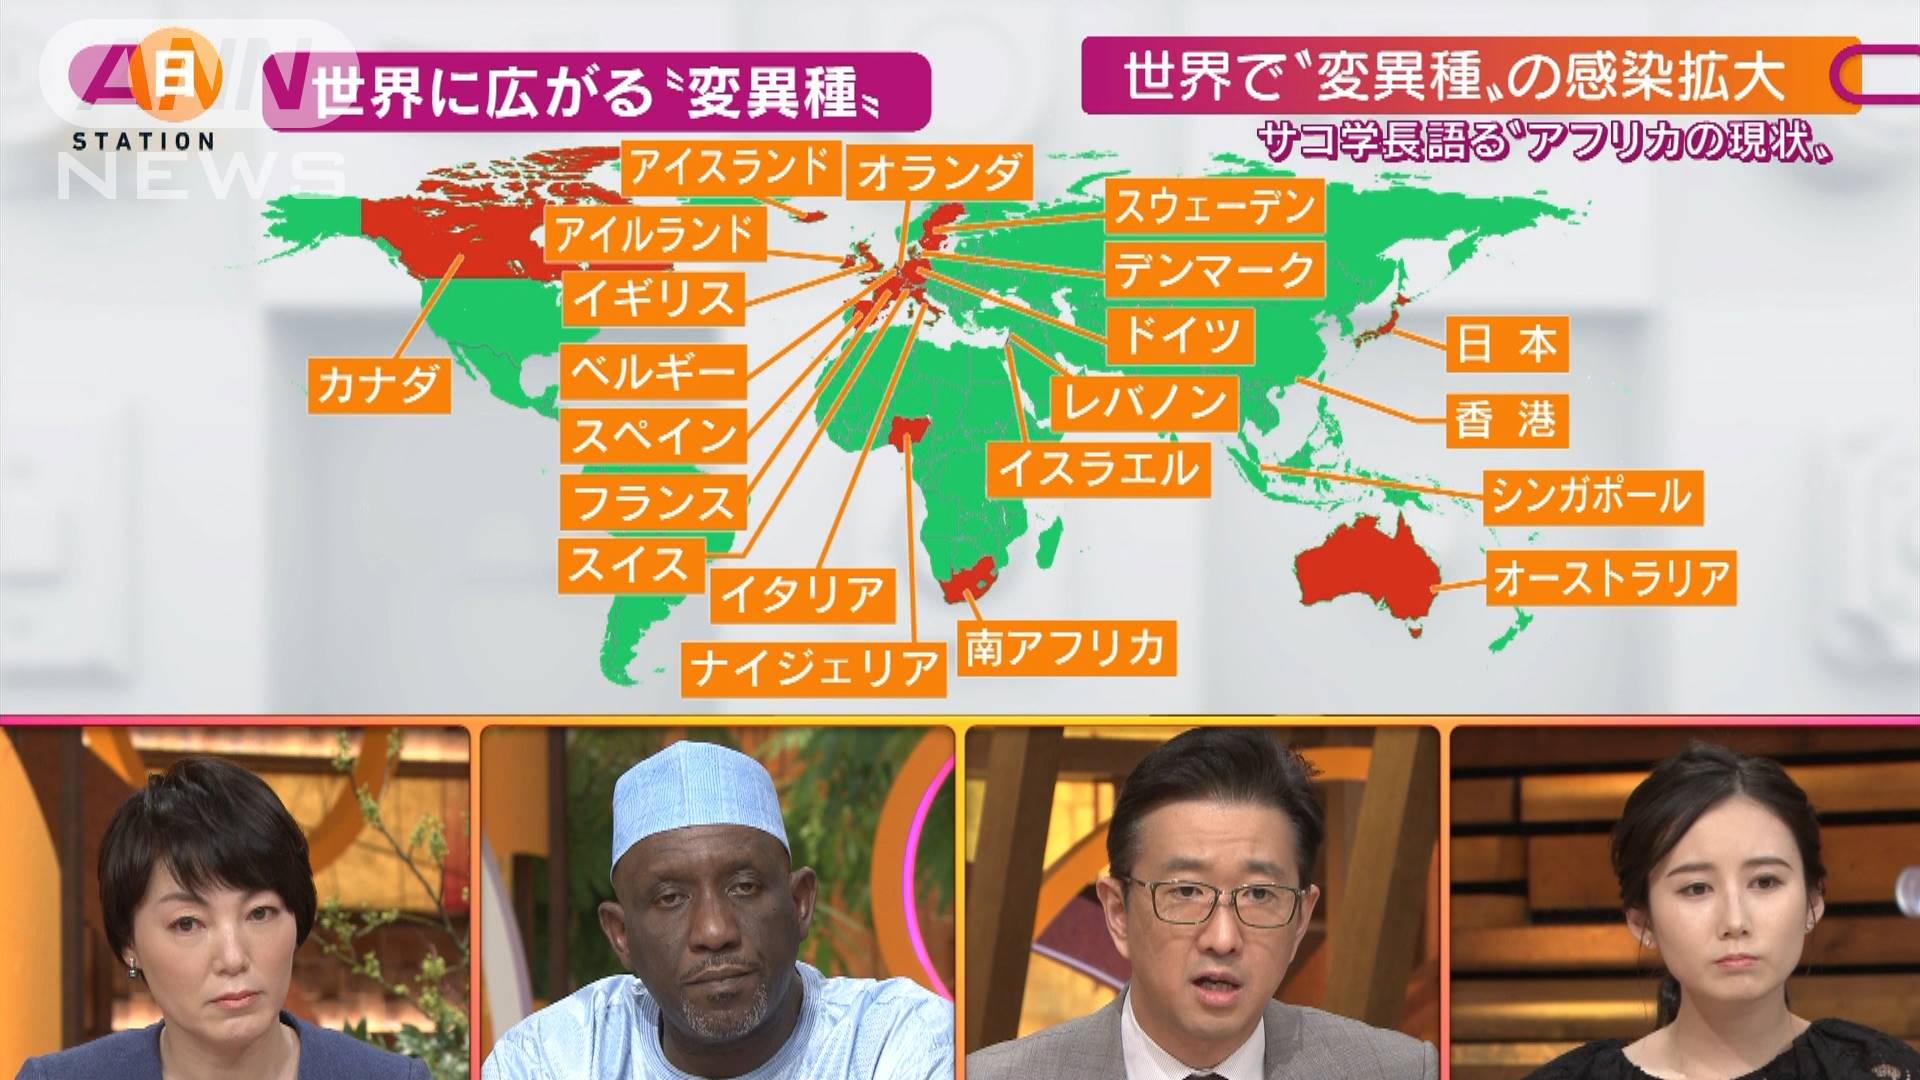 政府 変異種 への対応は 総理 臨戦態勢 の構え テレ朝news テレビ朝日のニュースサイト